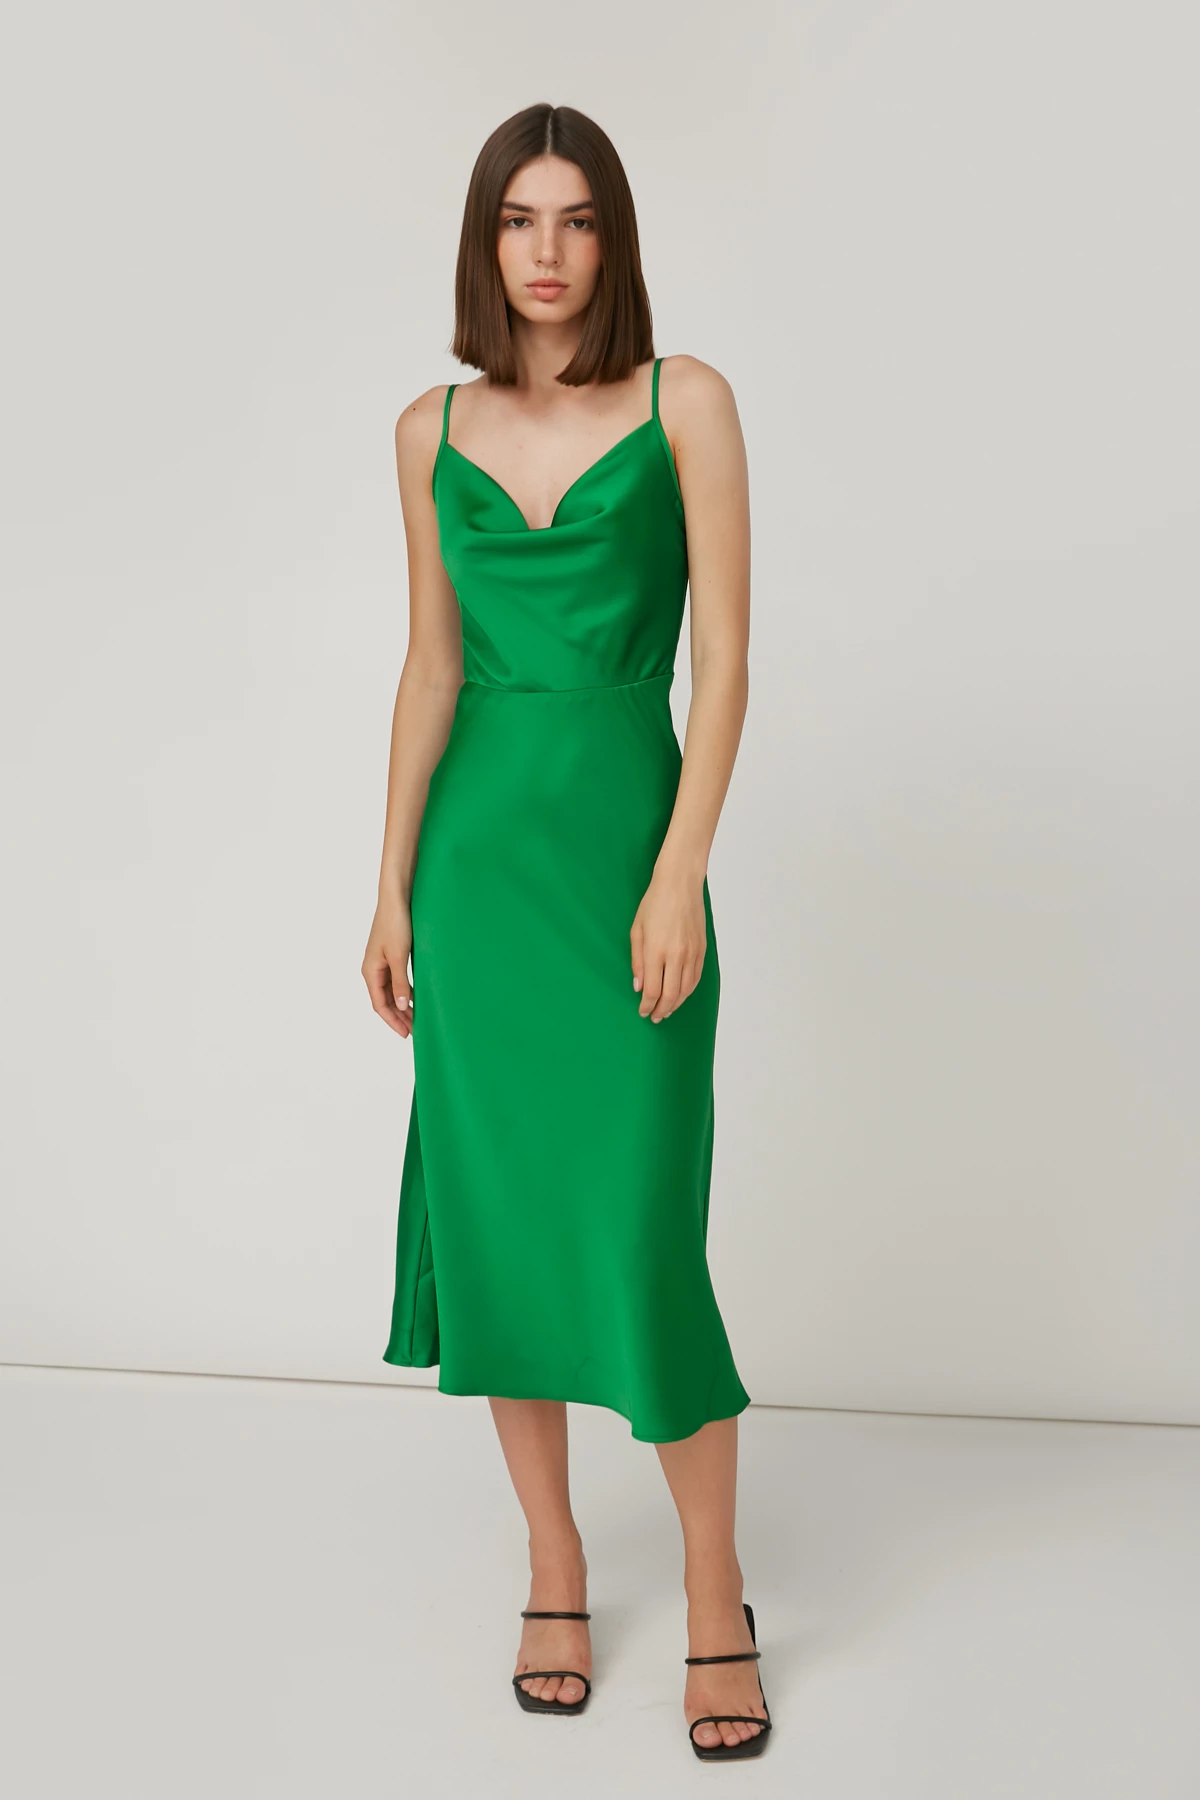 Ярко-зеленое платье-комбинация с провисанием в области декольте, фото 2